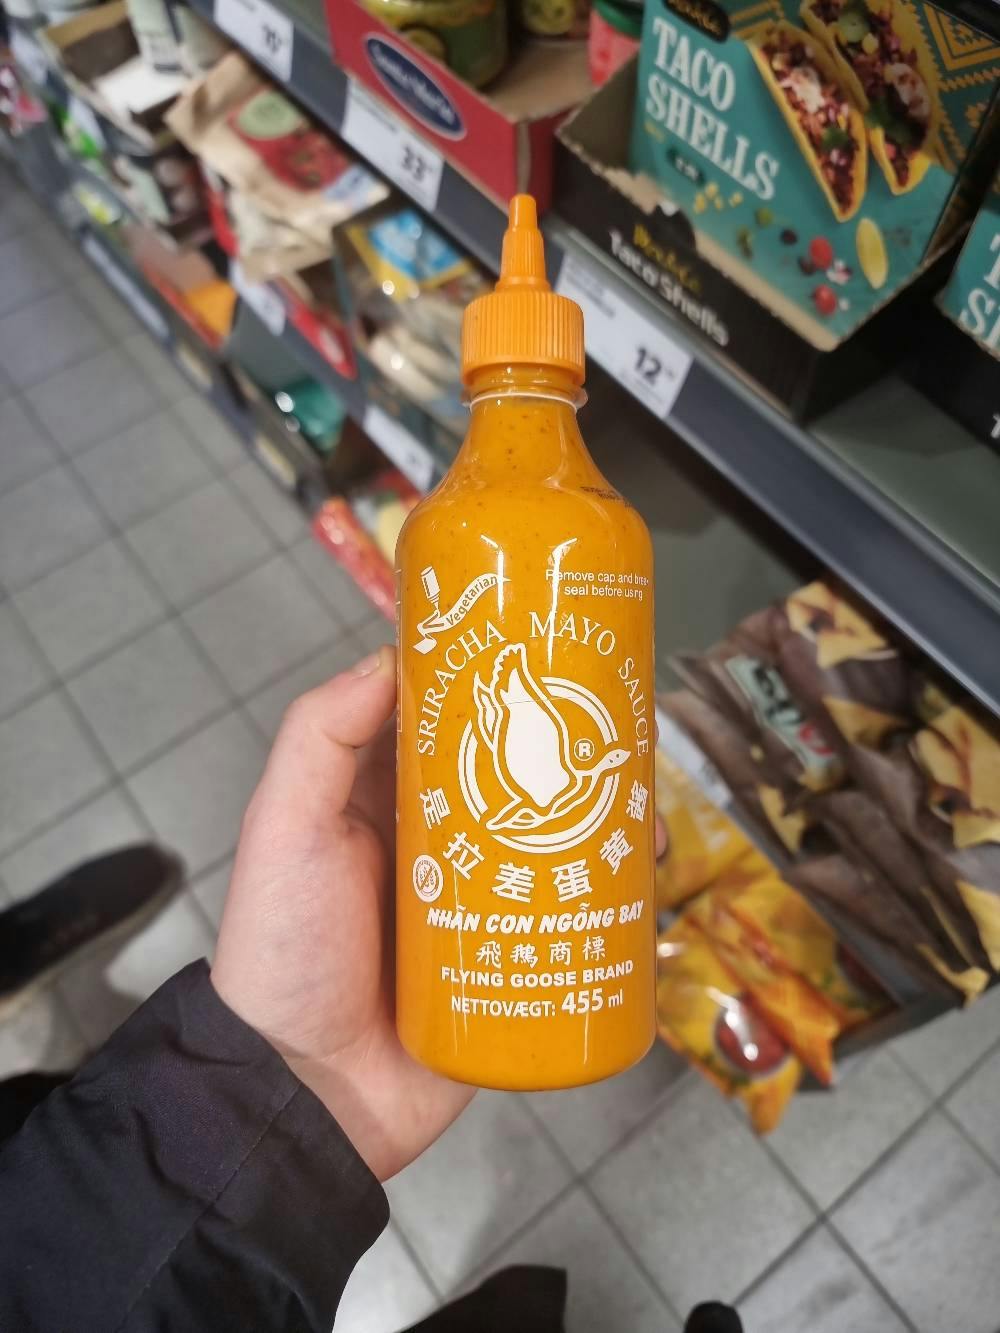 Sriracha Mayo Sauce - 455 ml